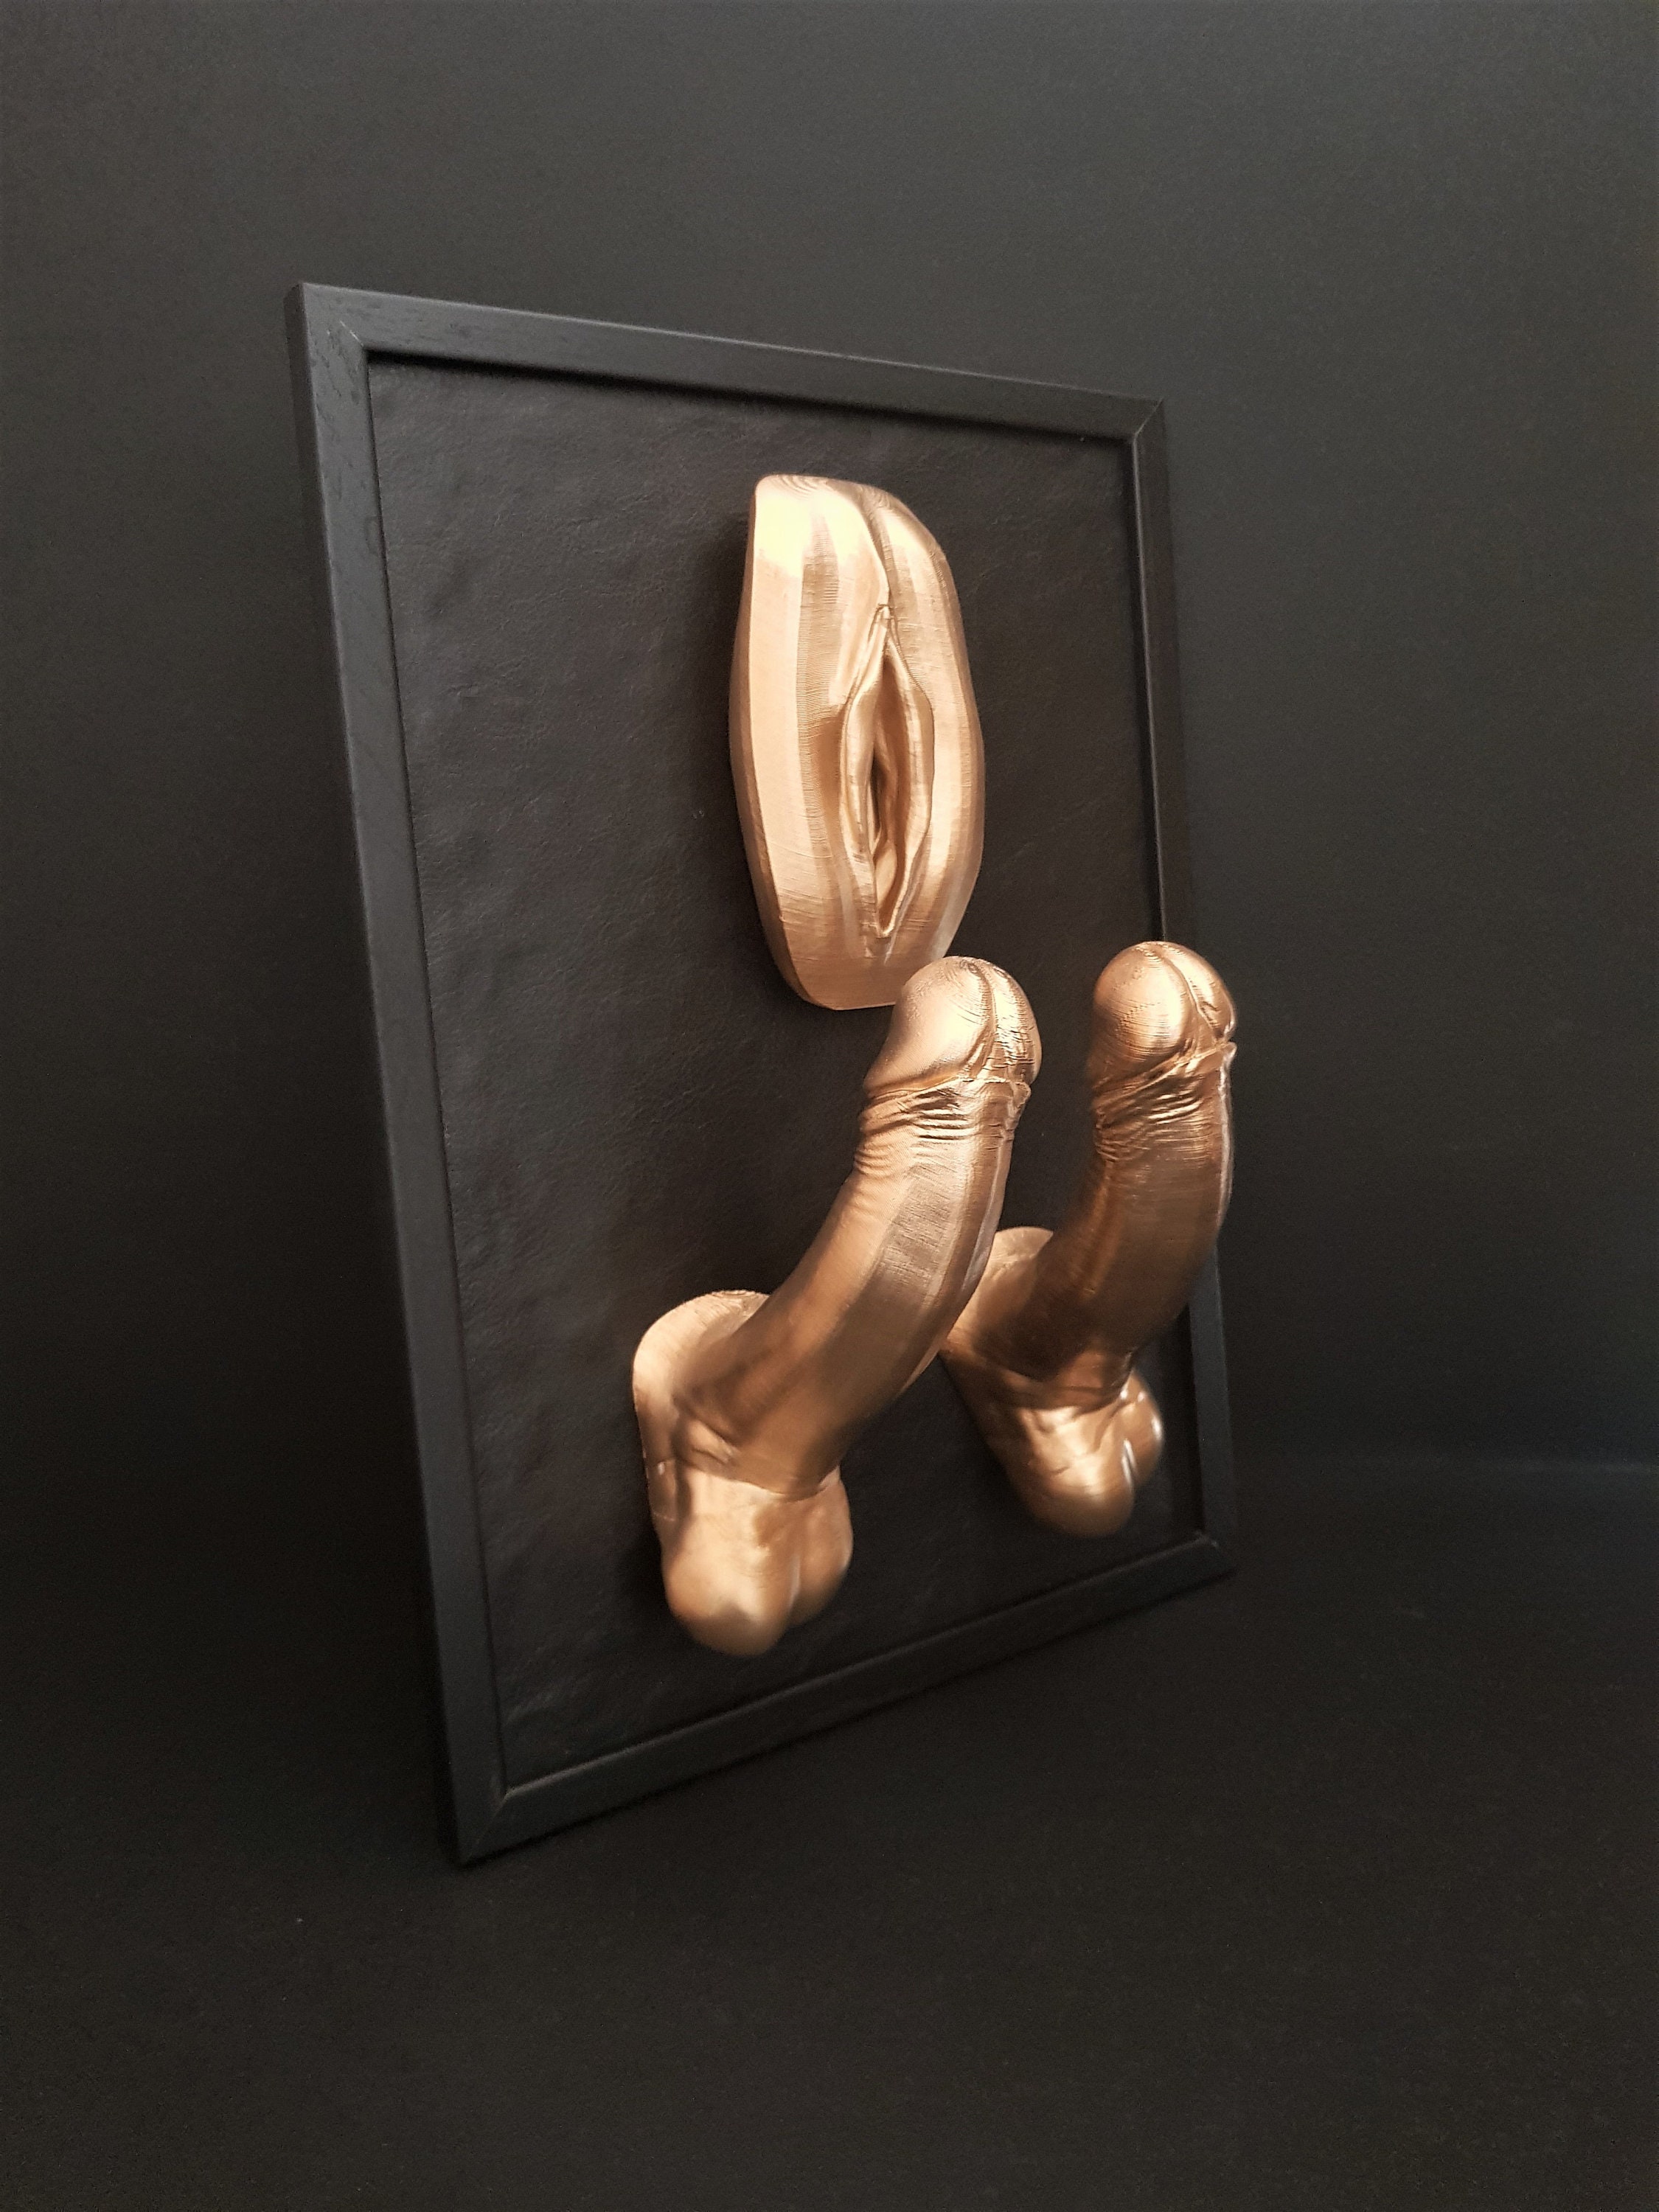 I Love Double Penetration 3D Art Sculpture Erotic Fetish picture